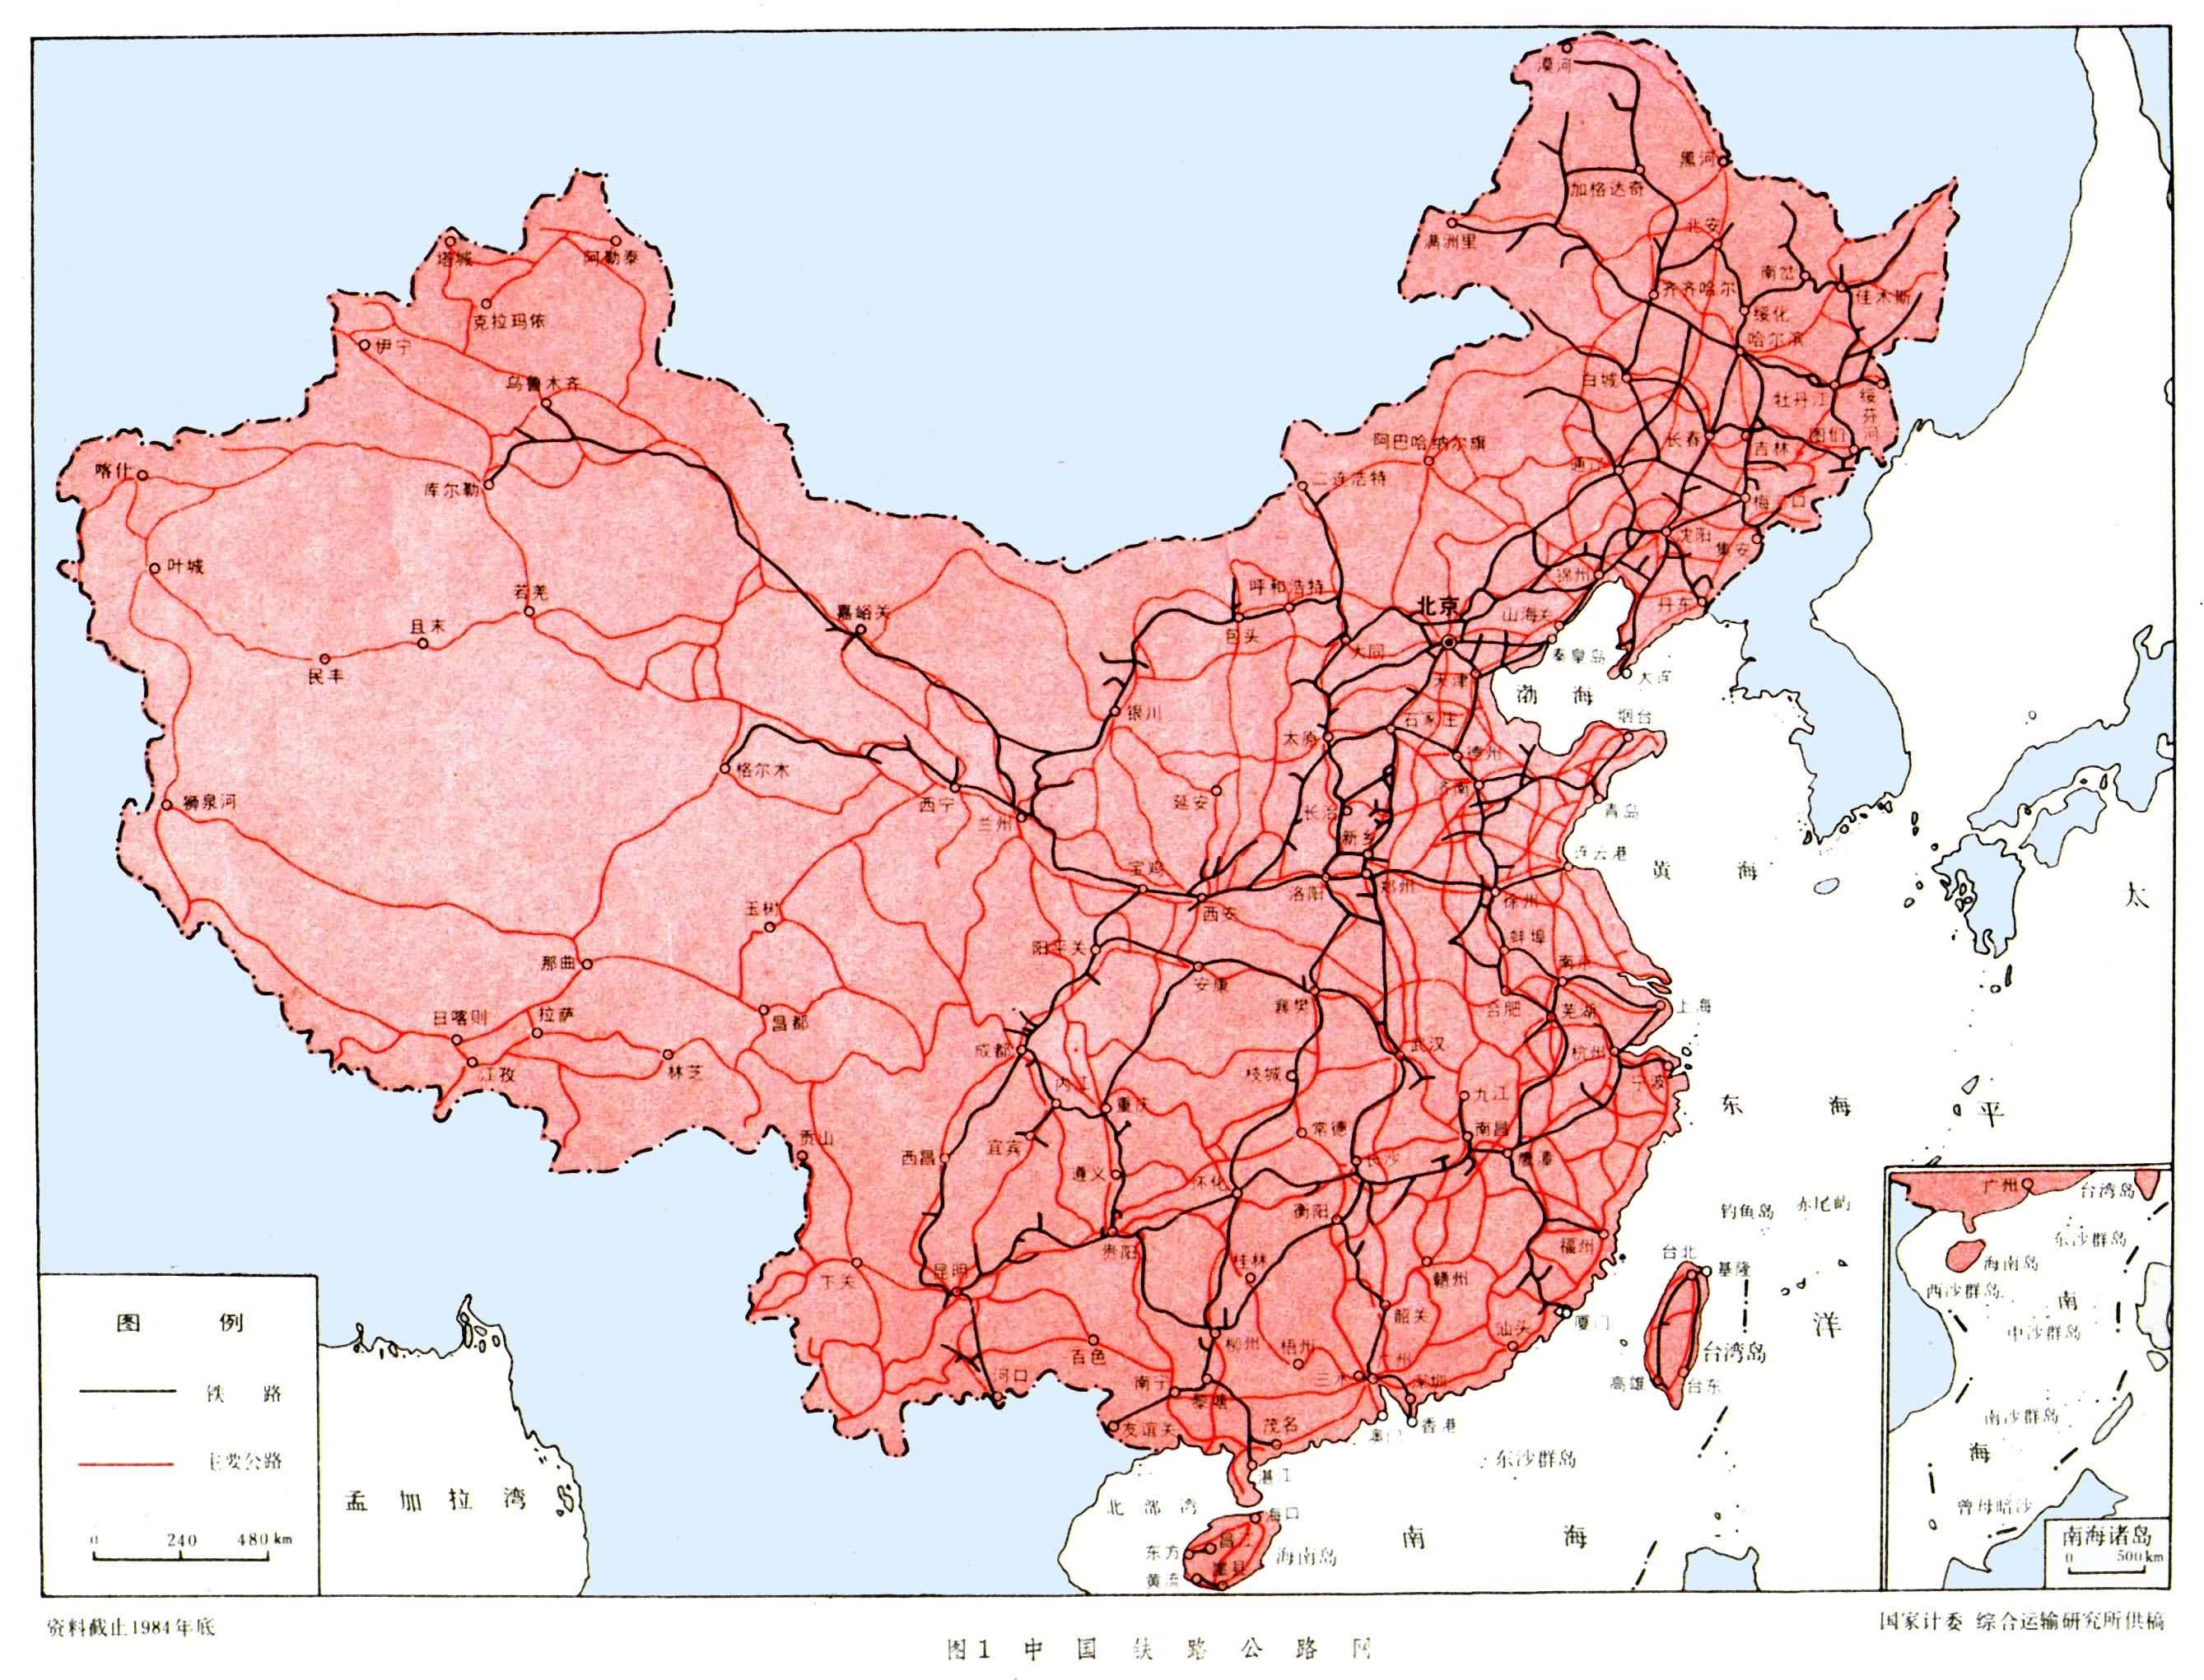 1949年以后,中国铁路交通得到蓬勃发展,其主要特点是①铁路线向西北